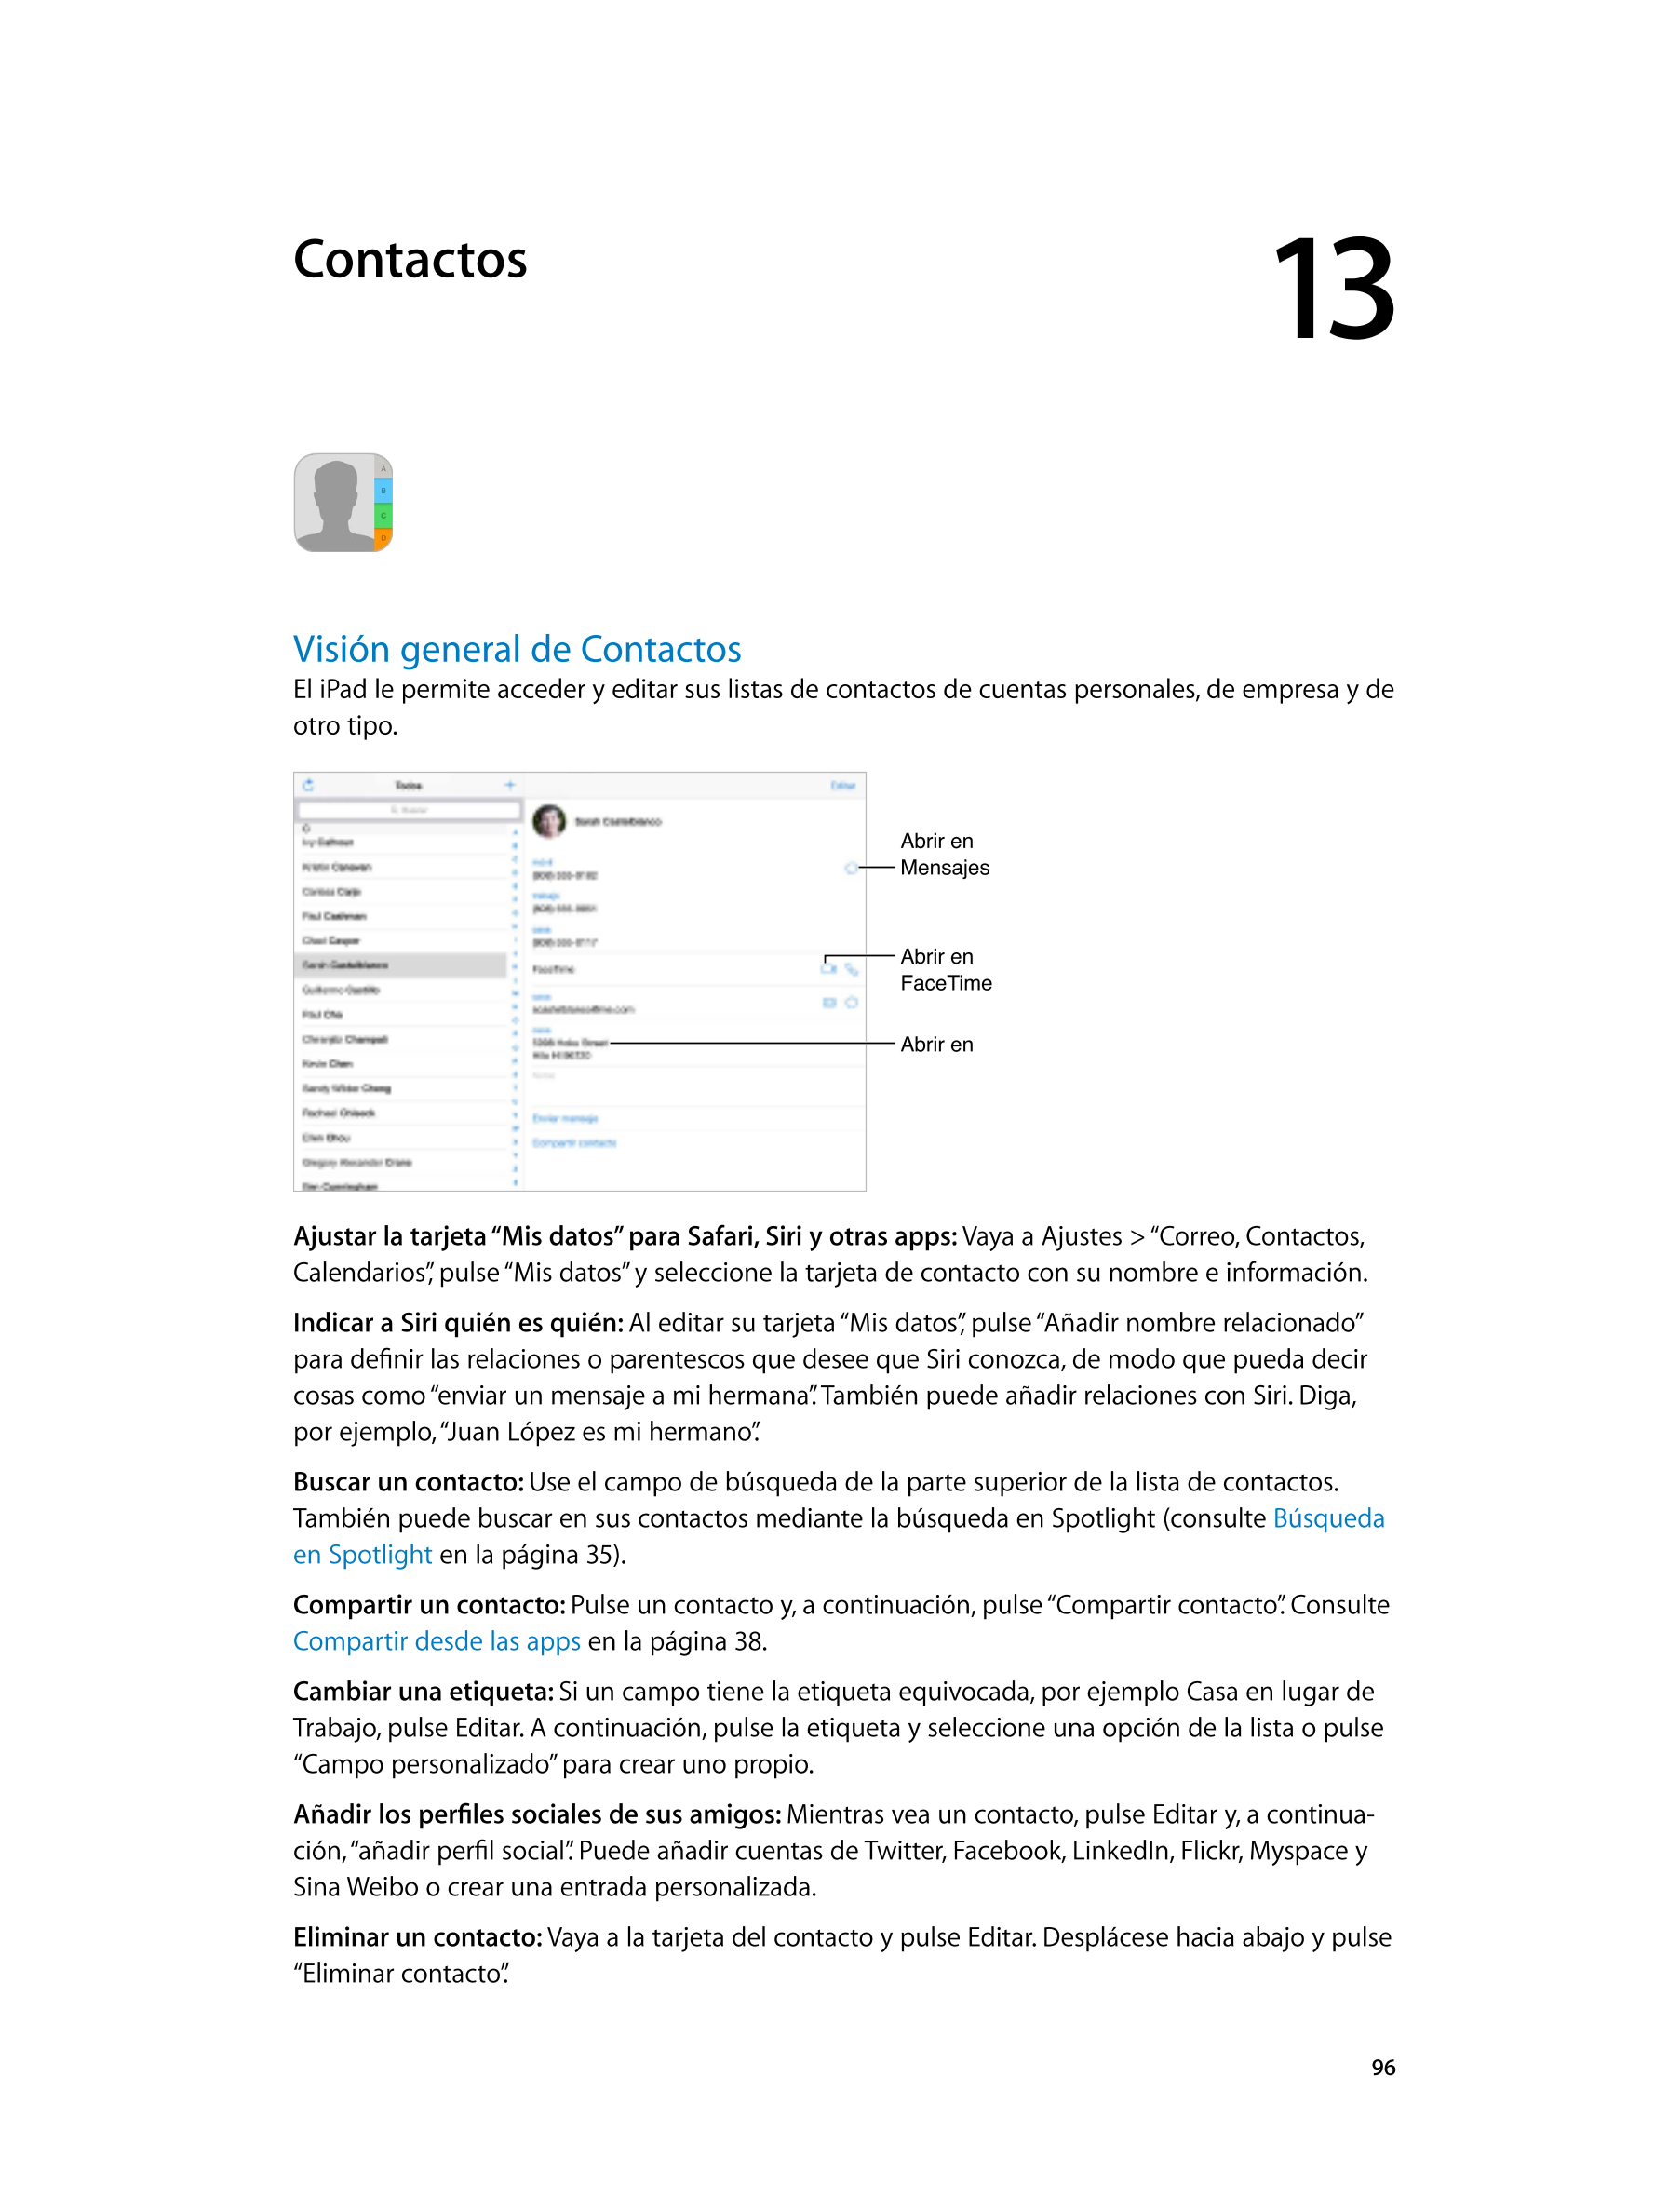   Contactos 13         
Visión general de Contactos
El iPad le permite acceder y editar sus listas de contactos de cuentas perso